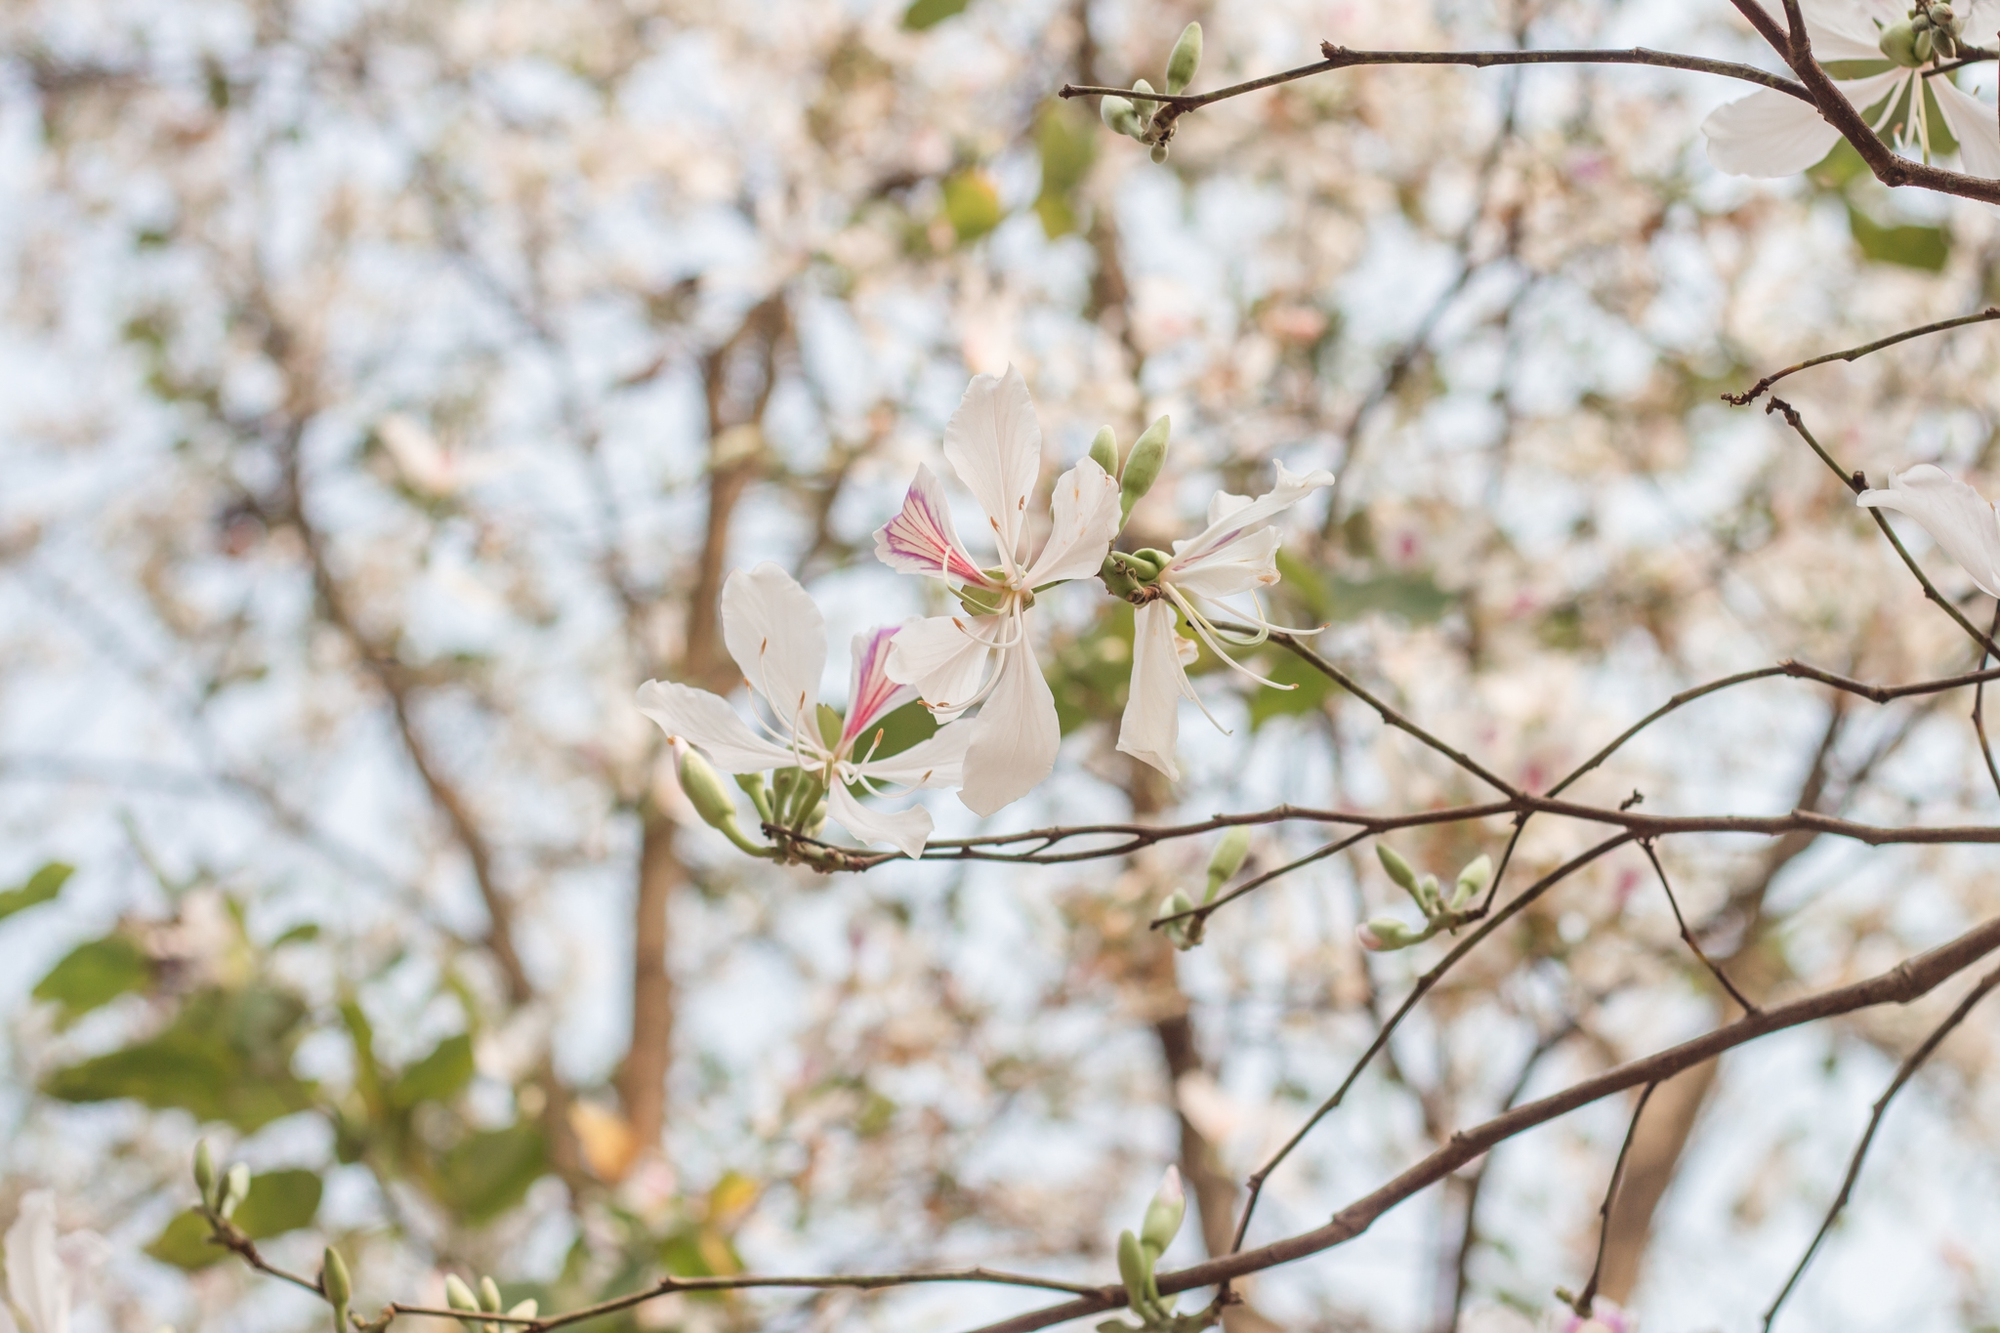 Ngất ngây trước vẻ đẹp Điện Biên mùa hoa ban nở lung linh nhất trong năm - Ảnh 4.